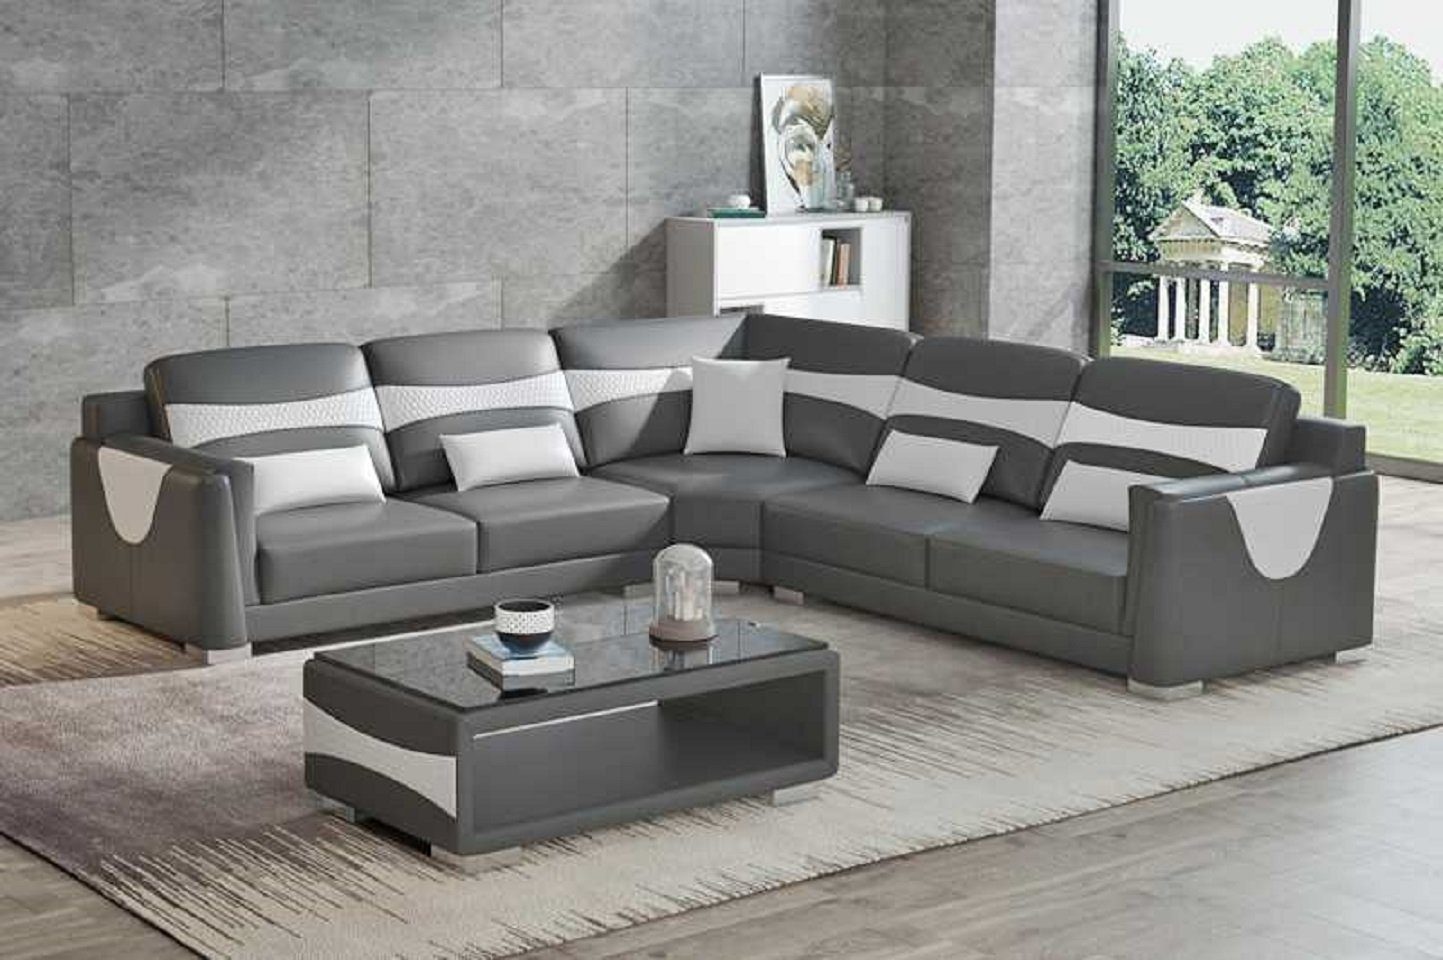 JVmoebel Ecksofa Design Eckgarnitur Ledersofa Ecksofa L Form Couch Kunstleder Sofa, 3 Teile, Made in Europe Grau